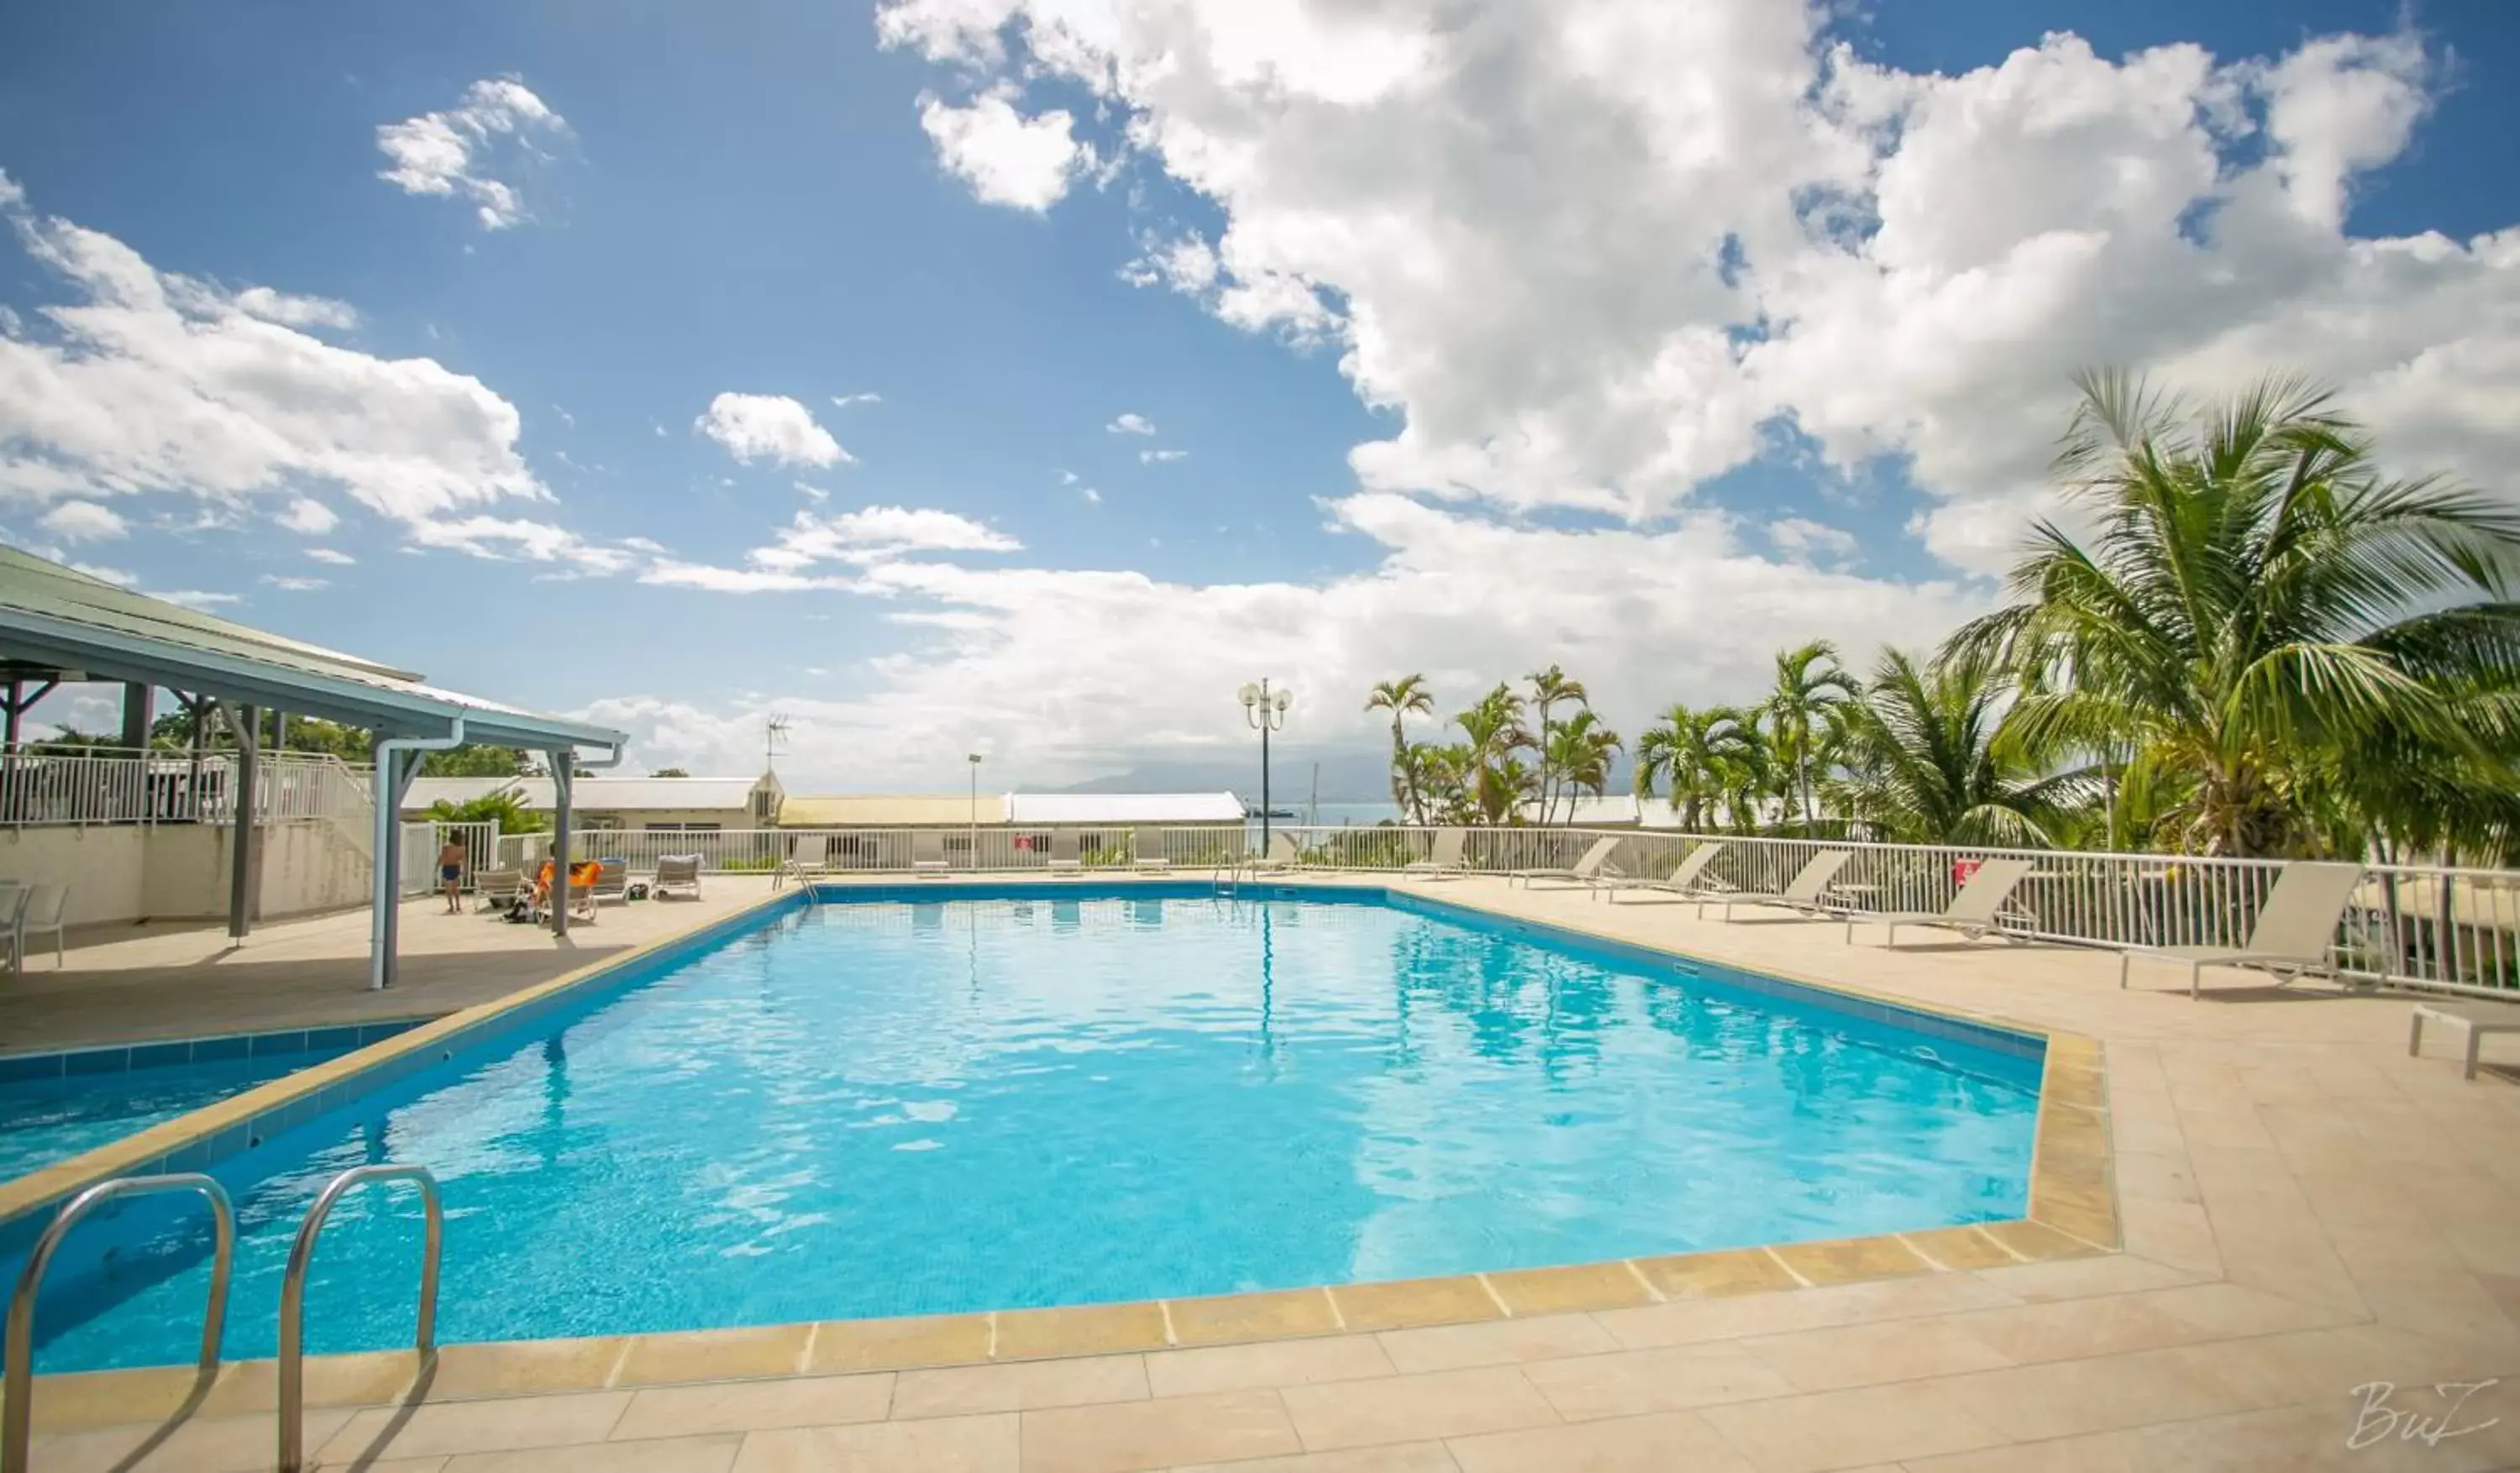 Pool view in Hotel Village Soleil